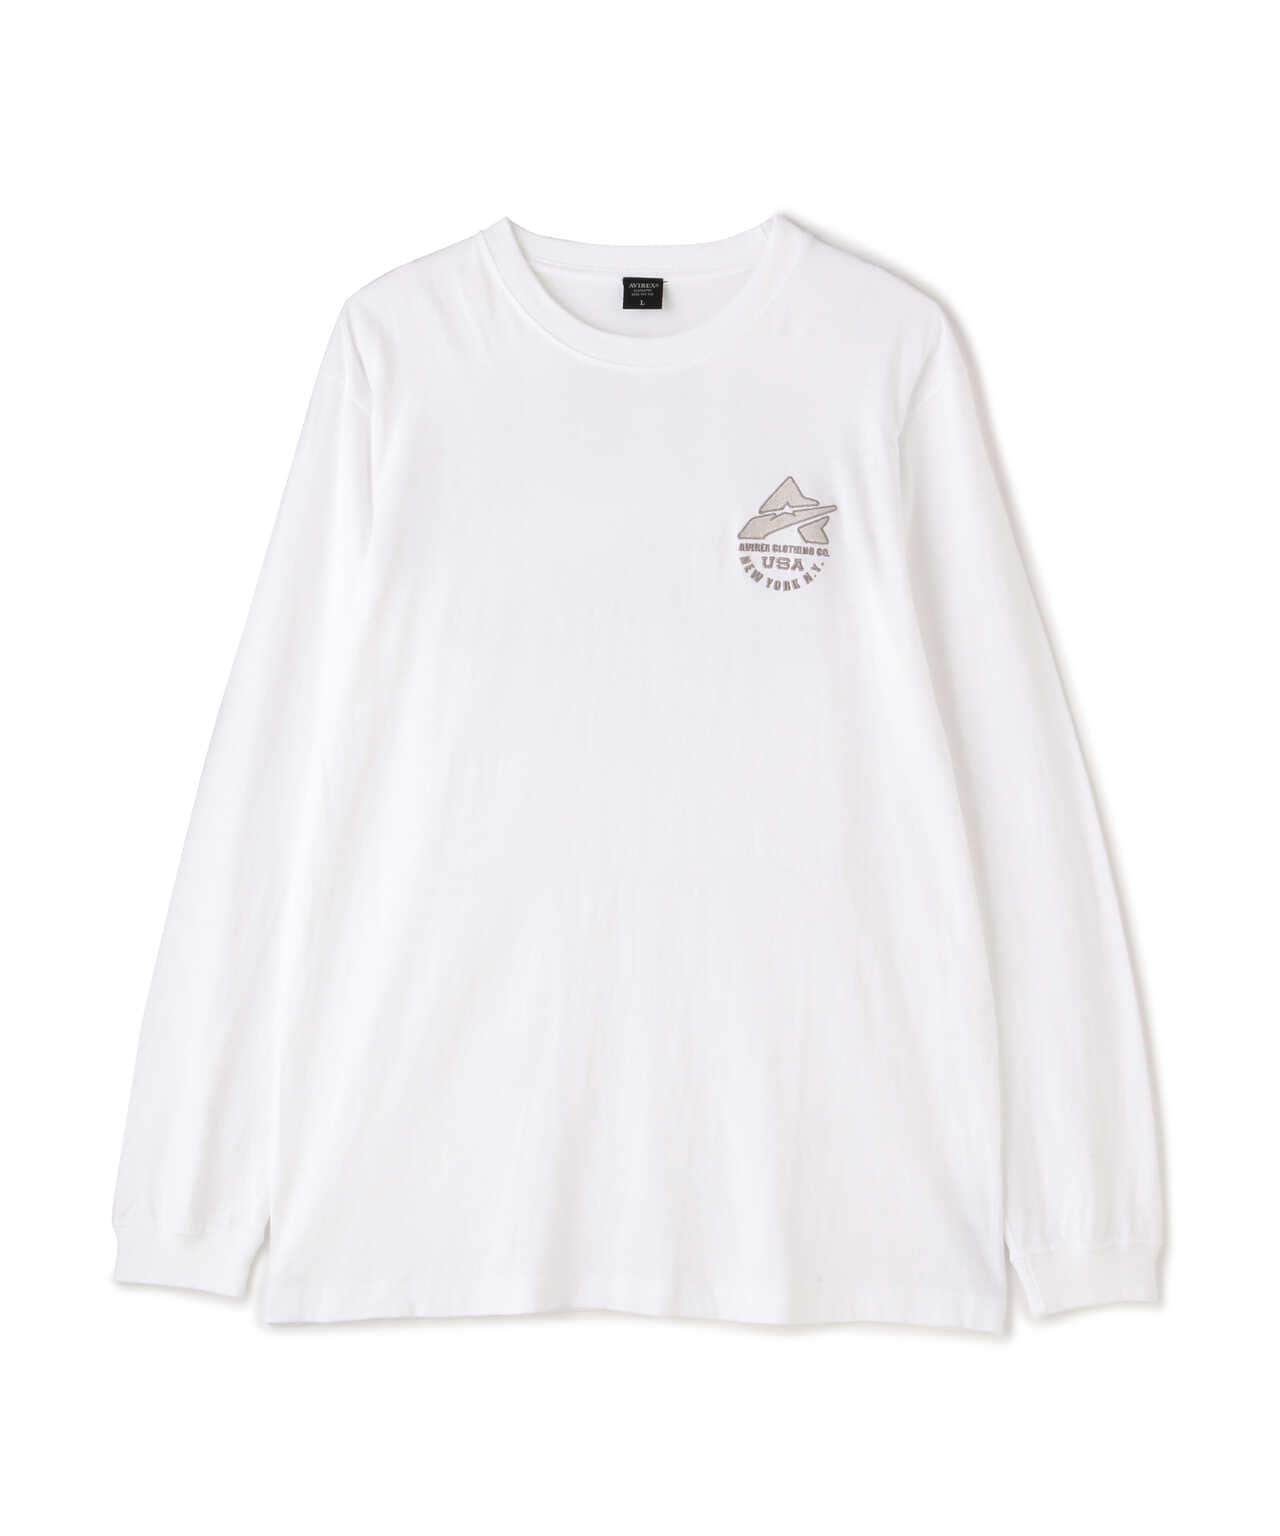 新品 Line Woody ロンT 定価5,940円 ホワイト - Tシャツ